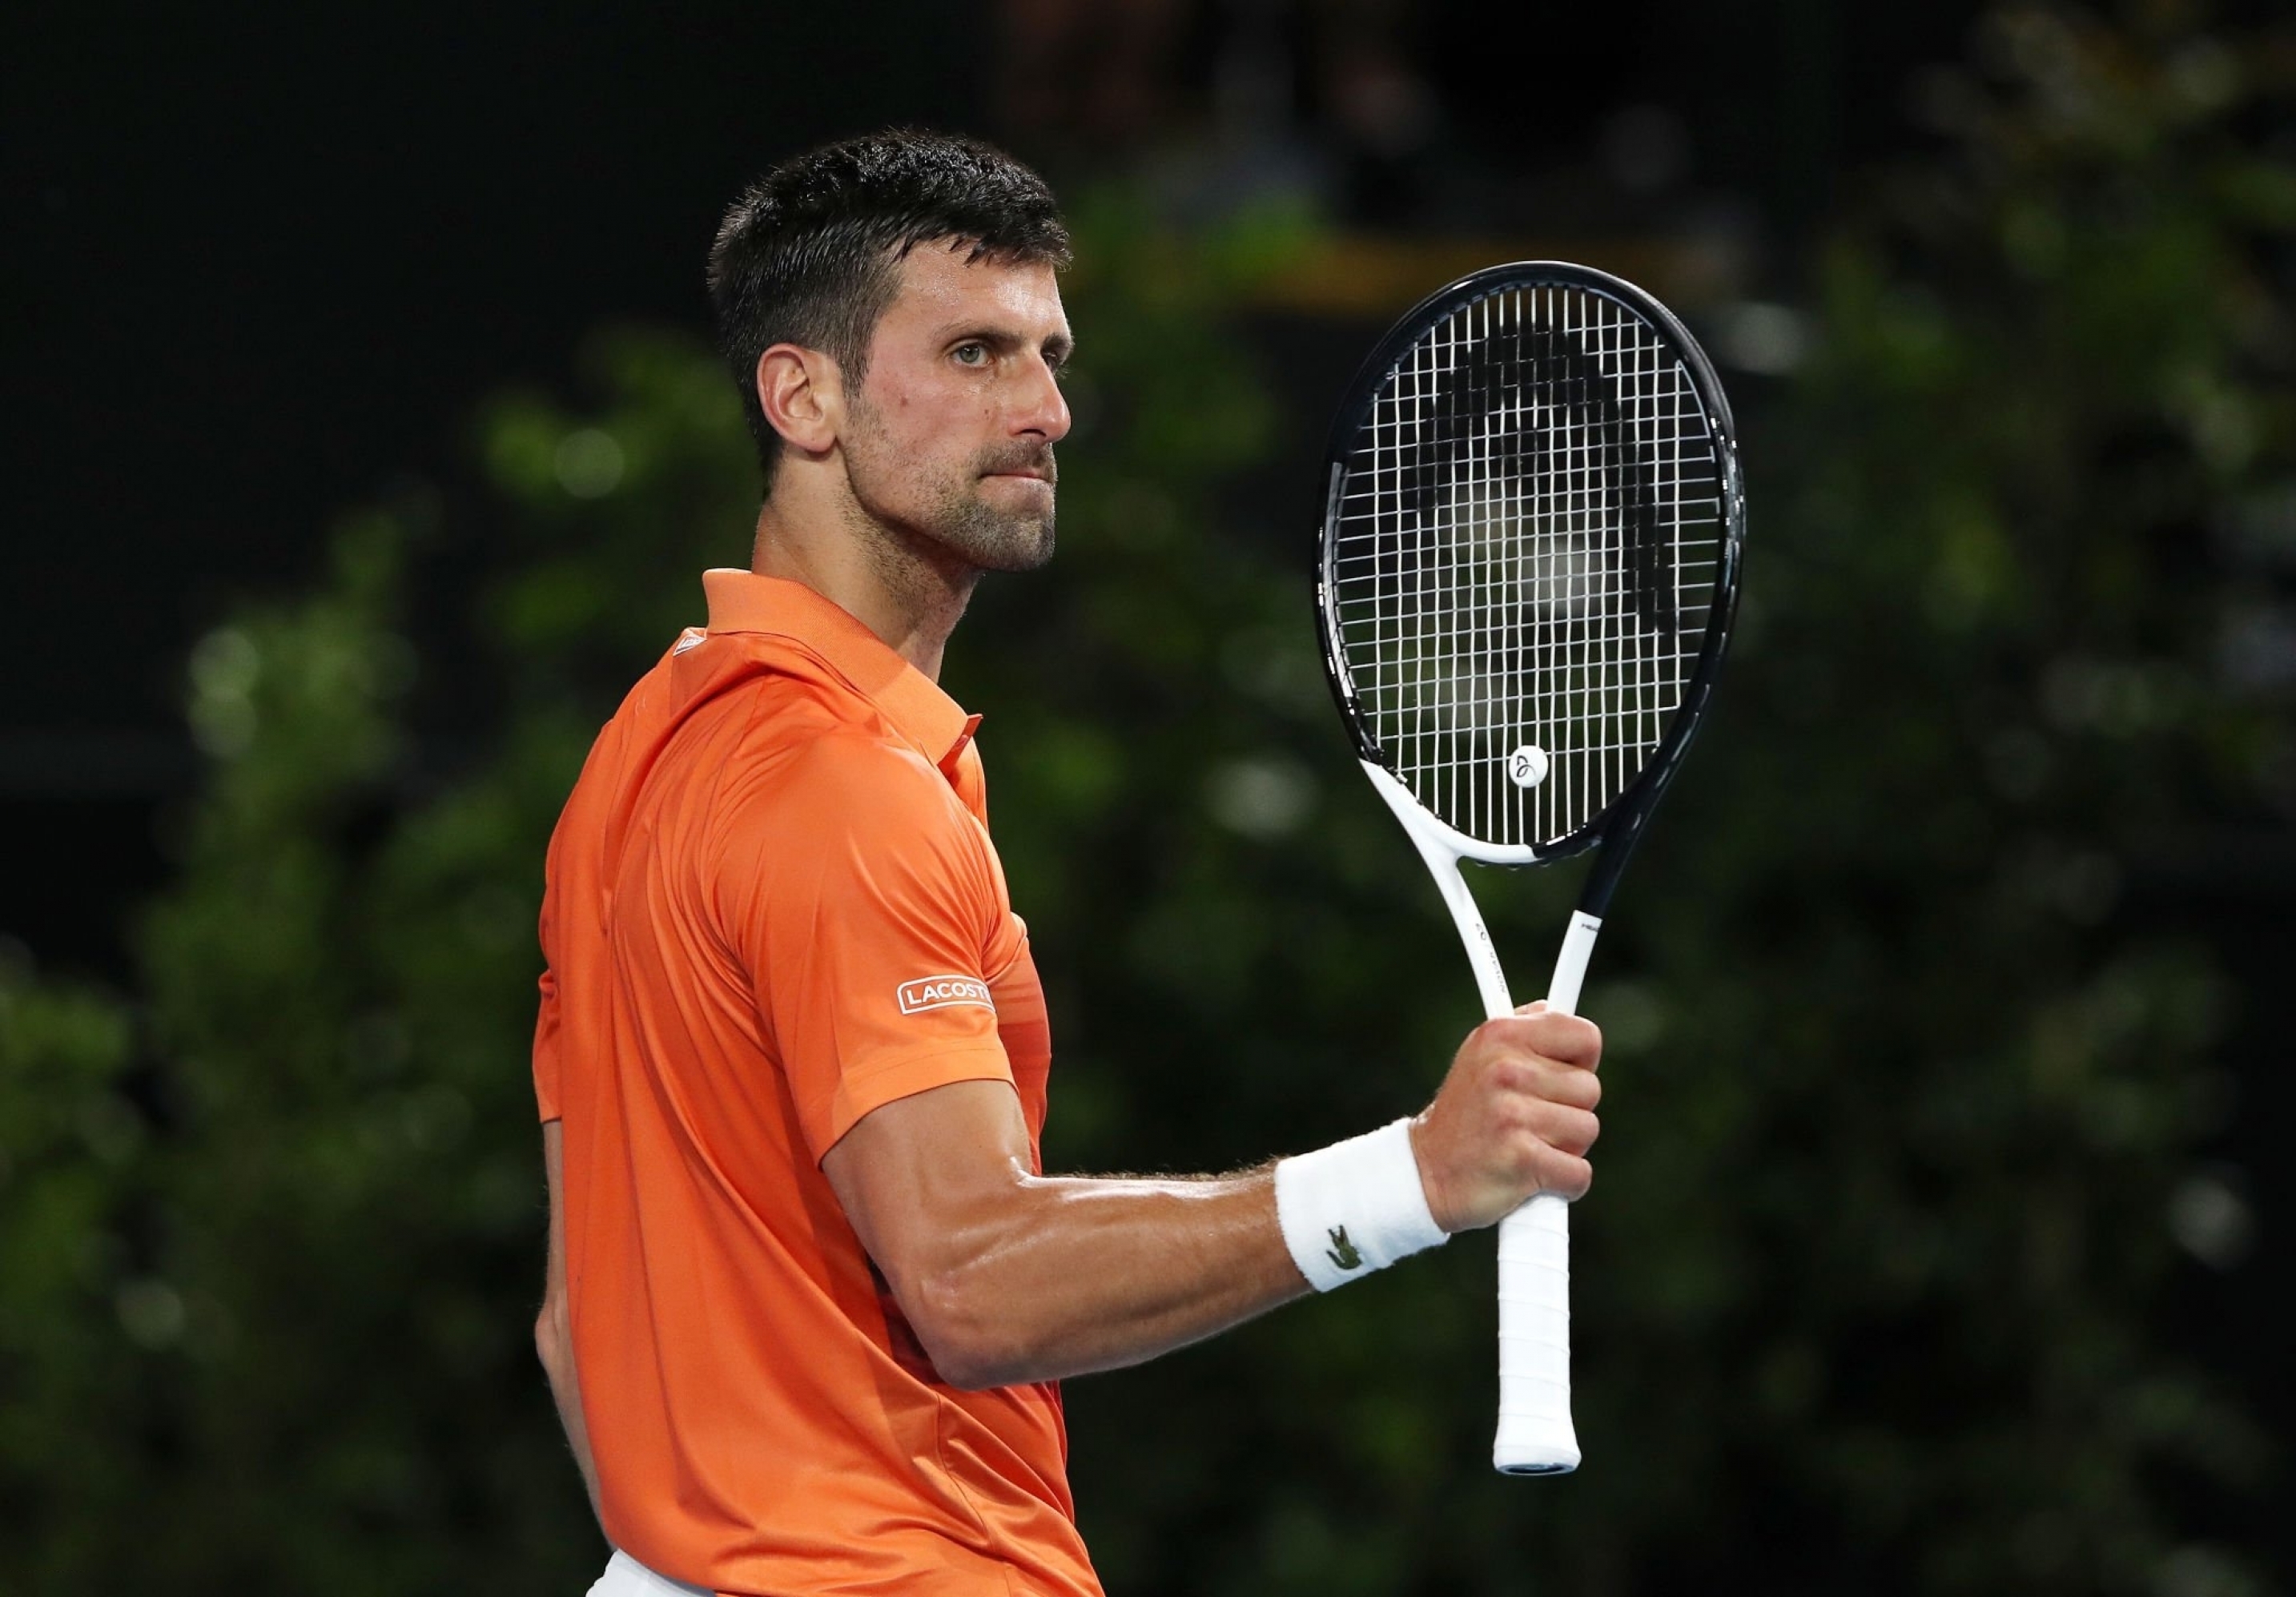 Tin nổi bật giữa Djokovic vs Medvedev: Novak Djokovic vào chung kết Adelaide International, đánh bại Daniil Medvedev trong các set liên tiếp - Xem tin nổi bật